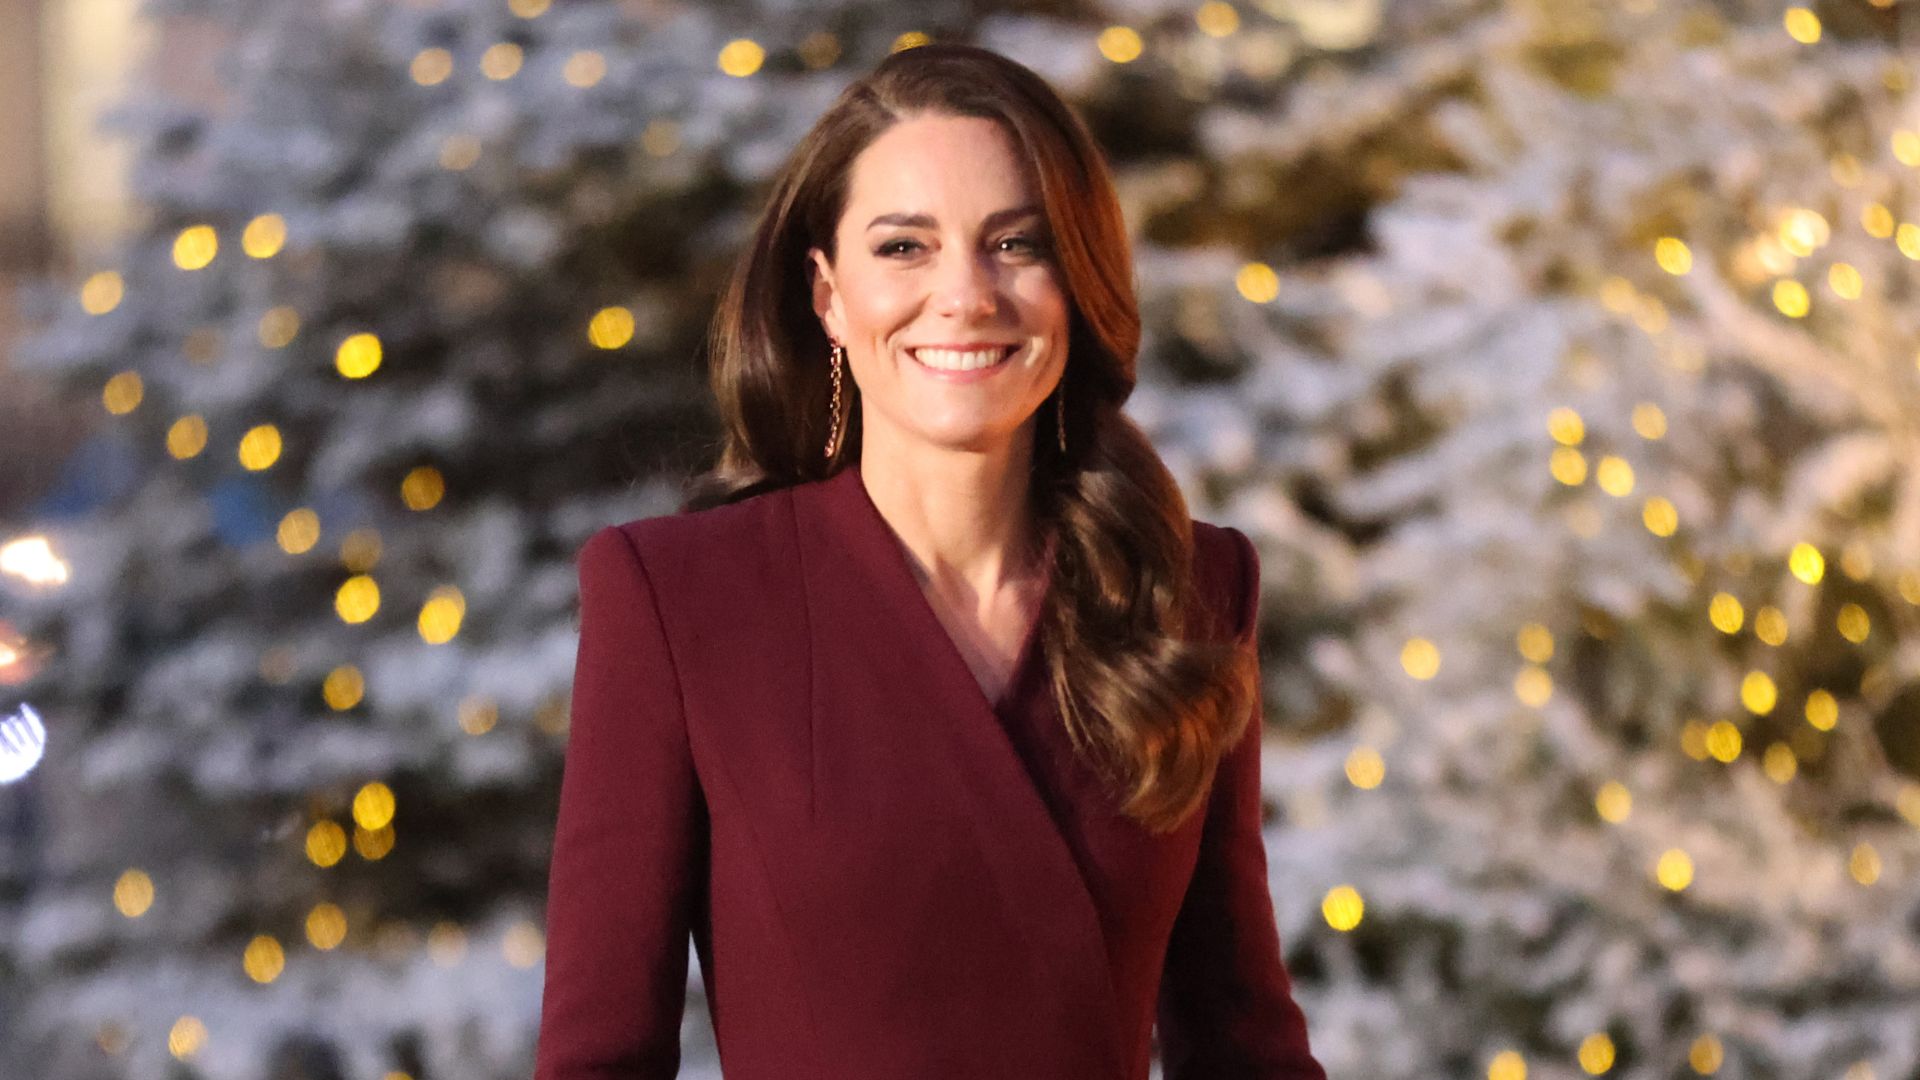 Kate Middleton teria ido à rave com amiga apontada como affair de príncipe William, diz jornal